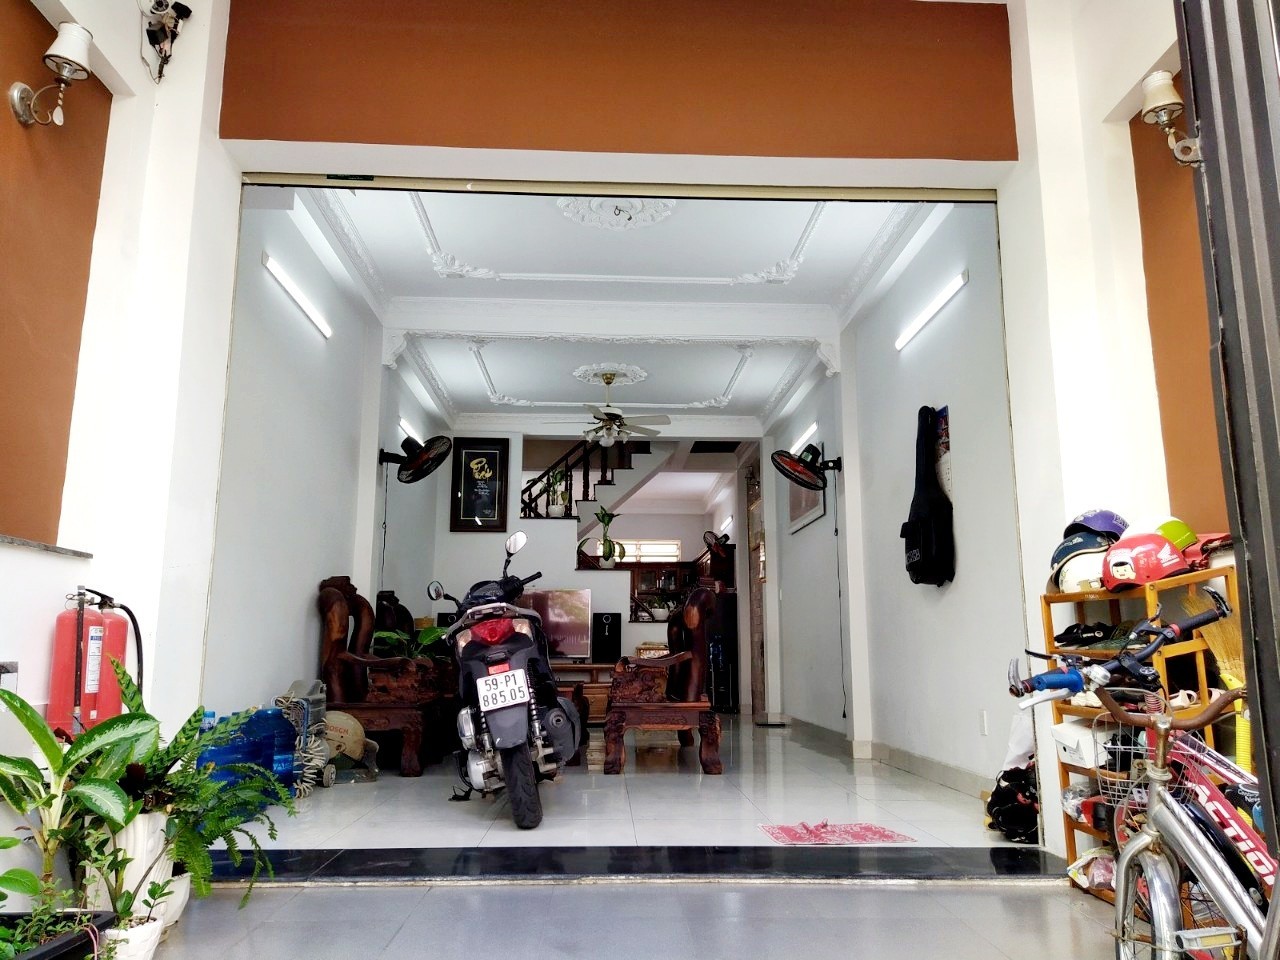 Bán nhà Tô Hiệu, Quận Tân Phú/ 78m2(4x19.5)/ 3 TẦNG/ HẺM NHỰA 7M